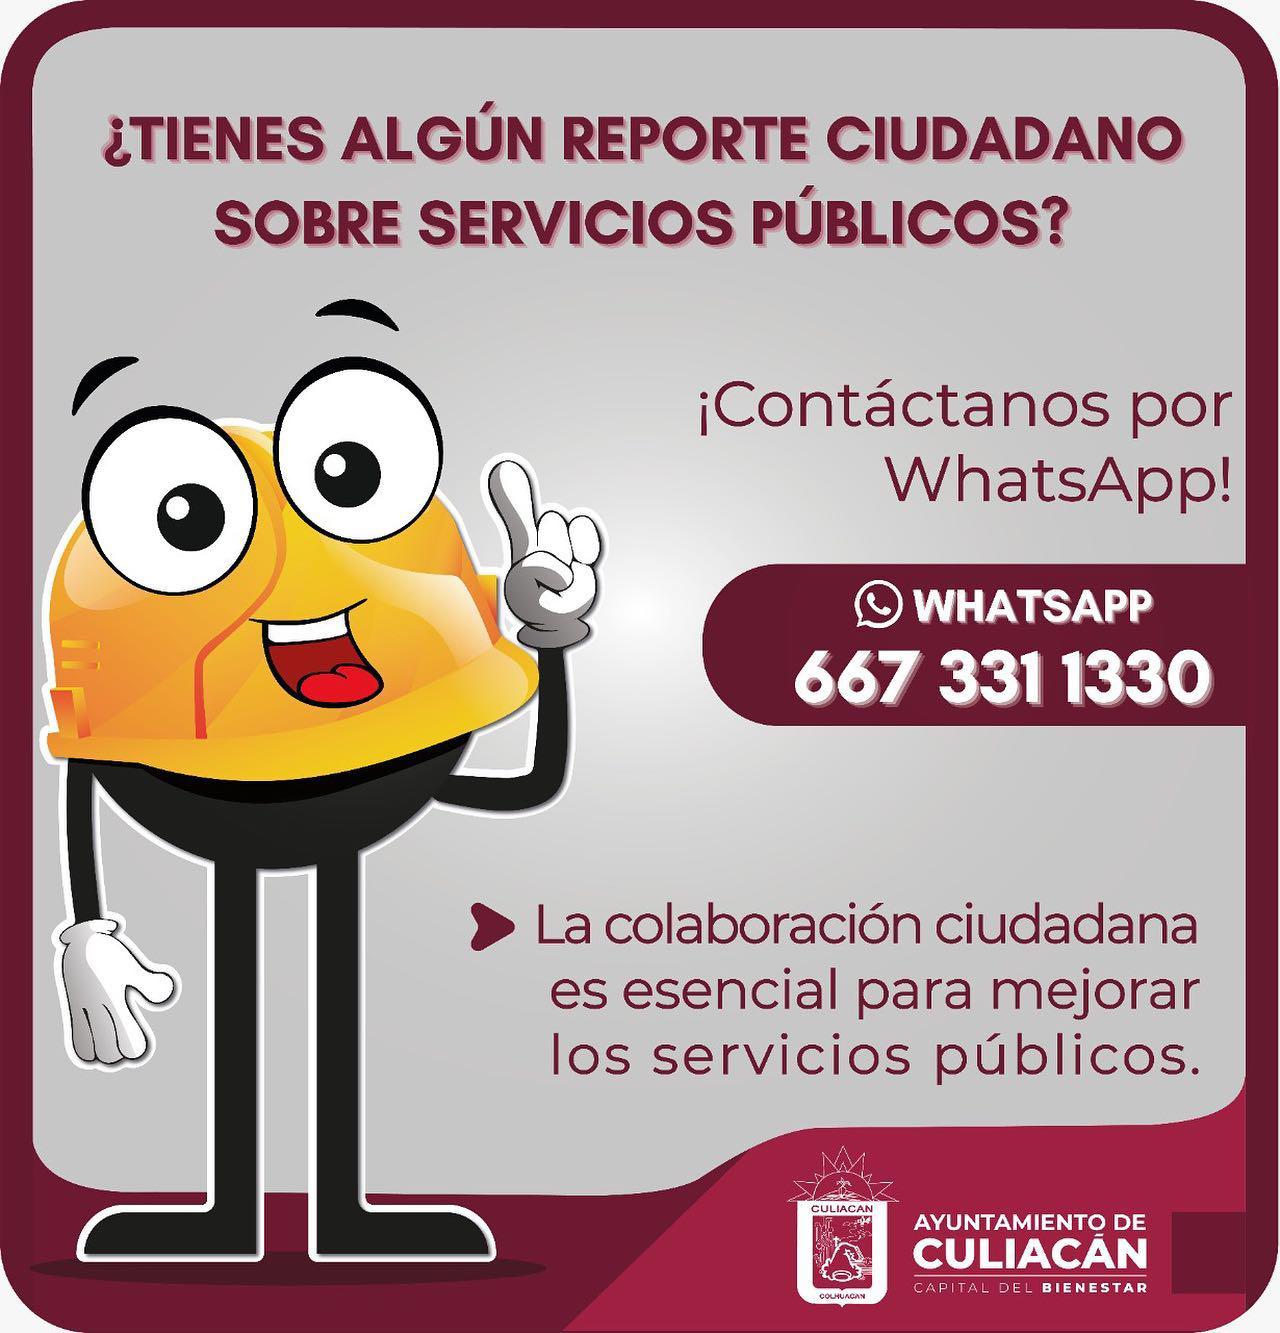 $!Habilita Gobierno de Culiacán WhatsApp para atender reportes ciudadanos